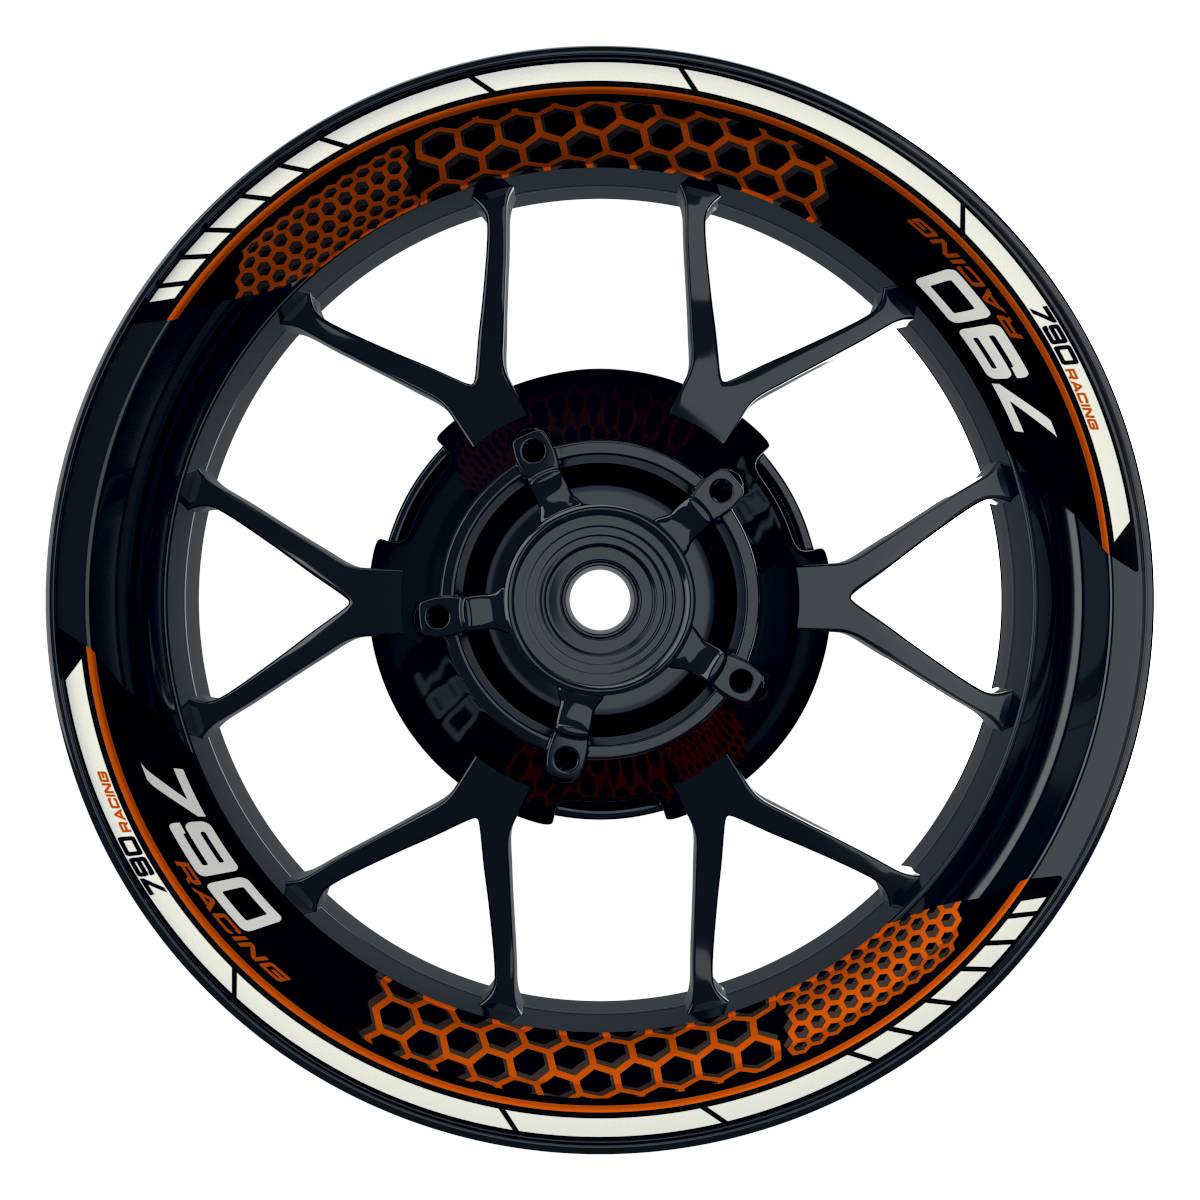 KTM Racing 790 Hexagon schwarz orange Frontansicht